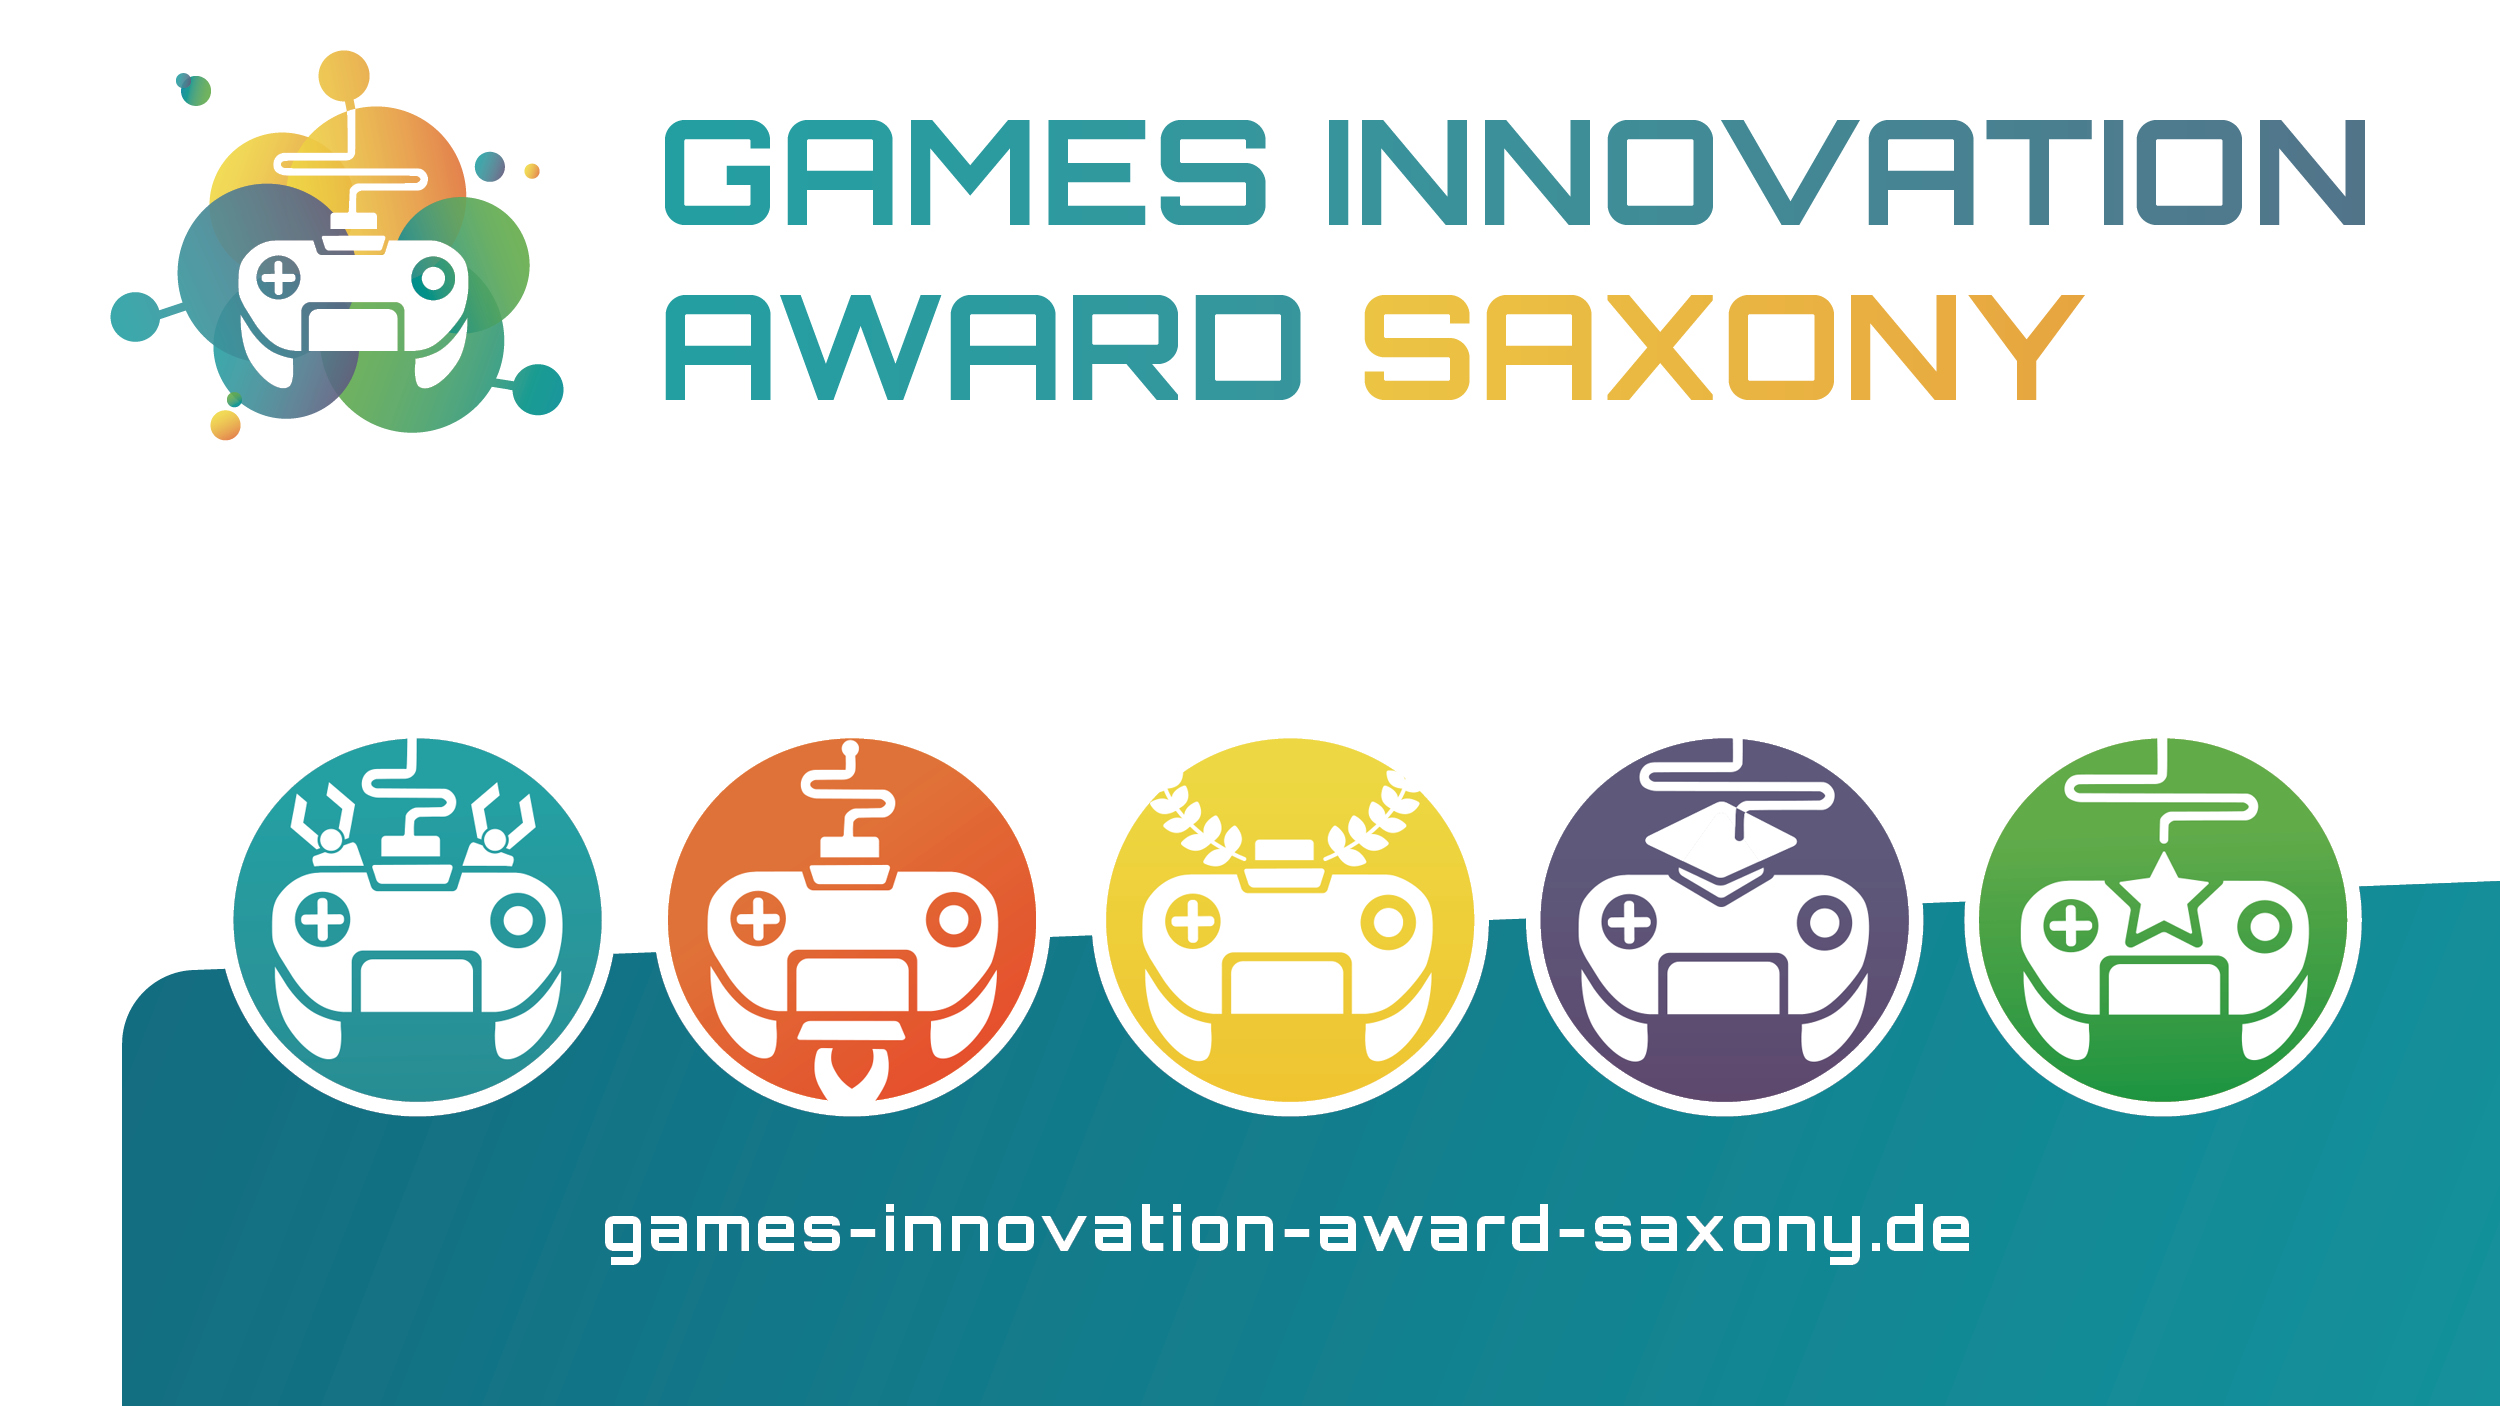 (c) Games-innovation-award-saxony.de